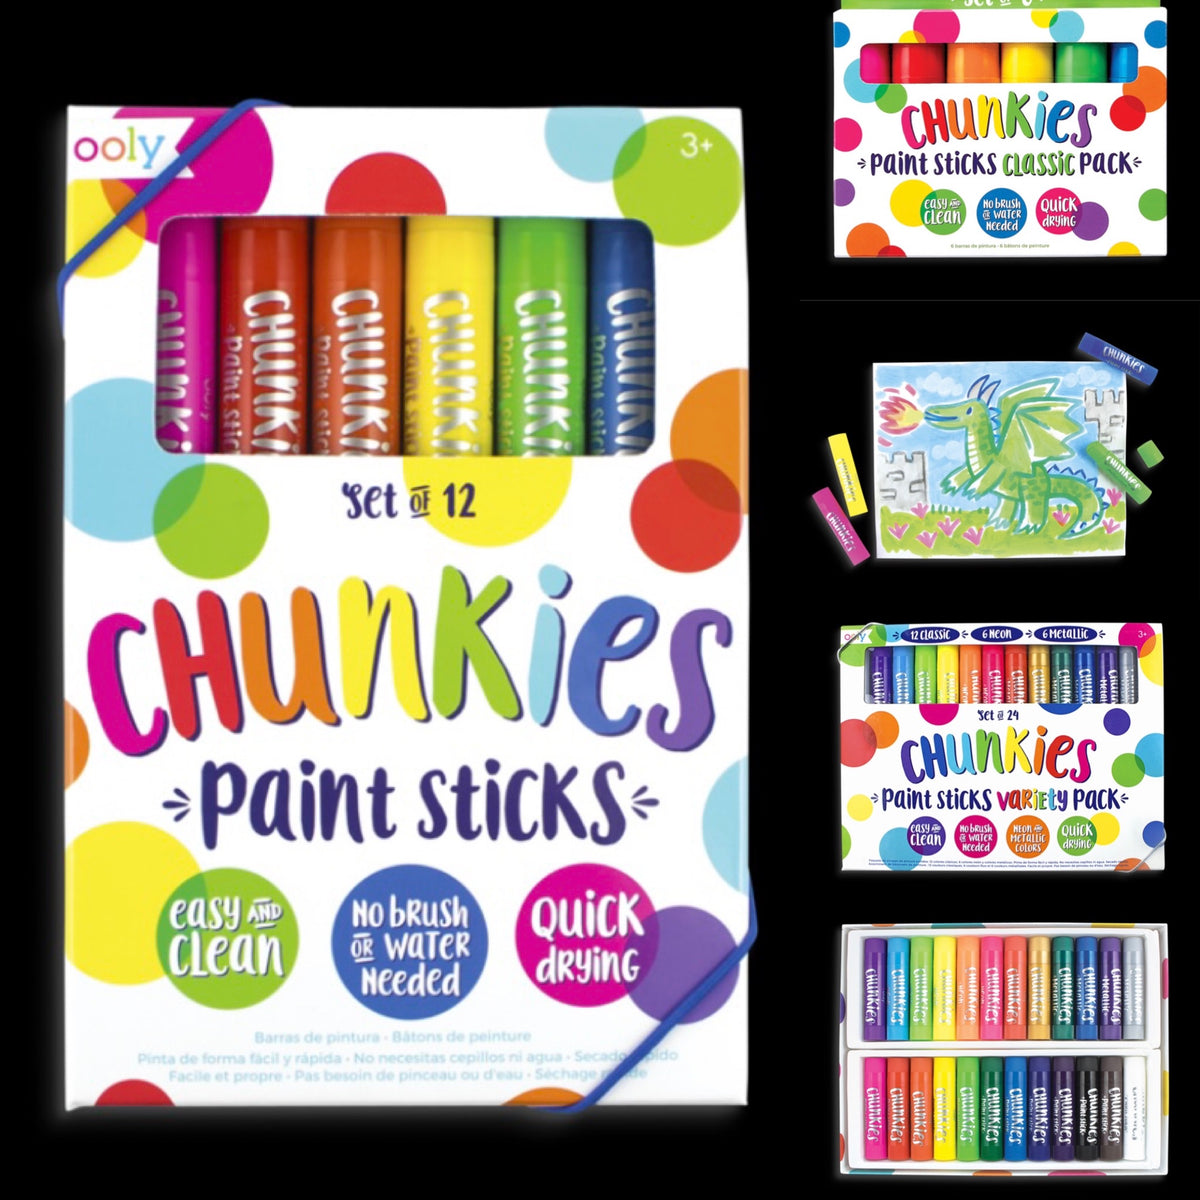 Chunkies Paint Sticks – General Store of Minnetonka